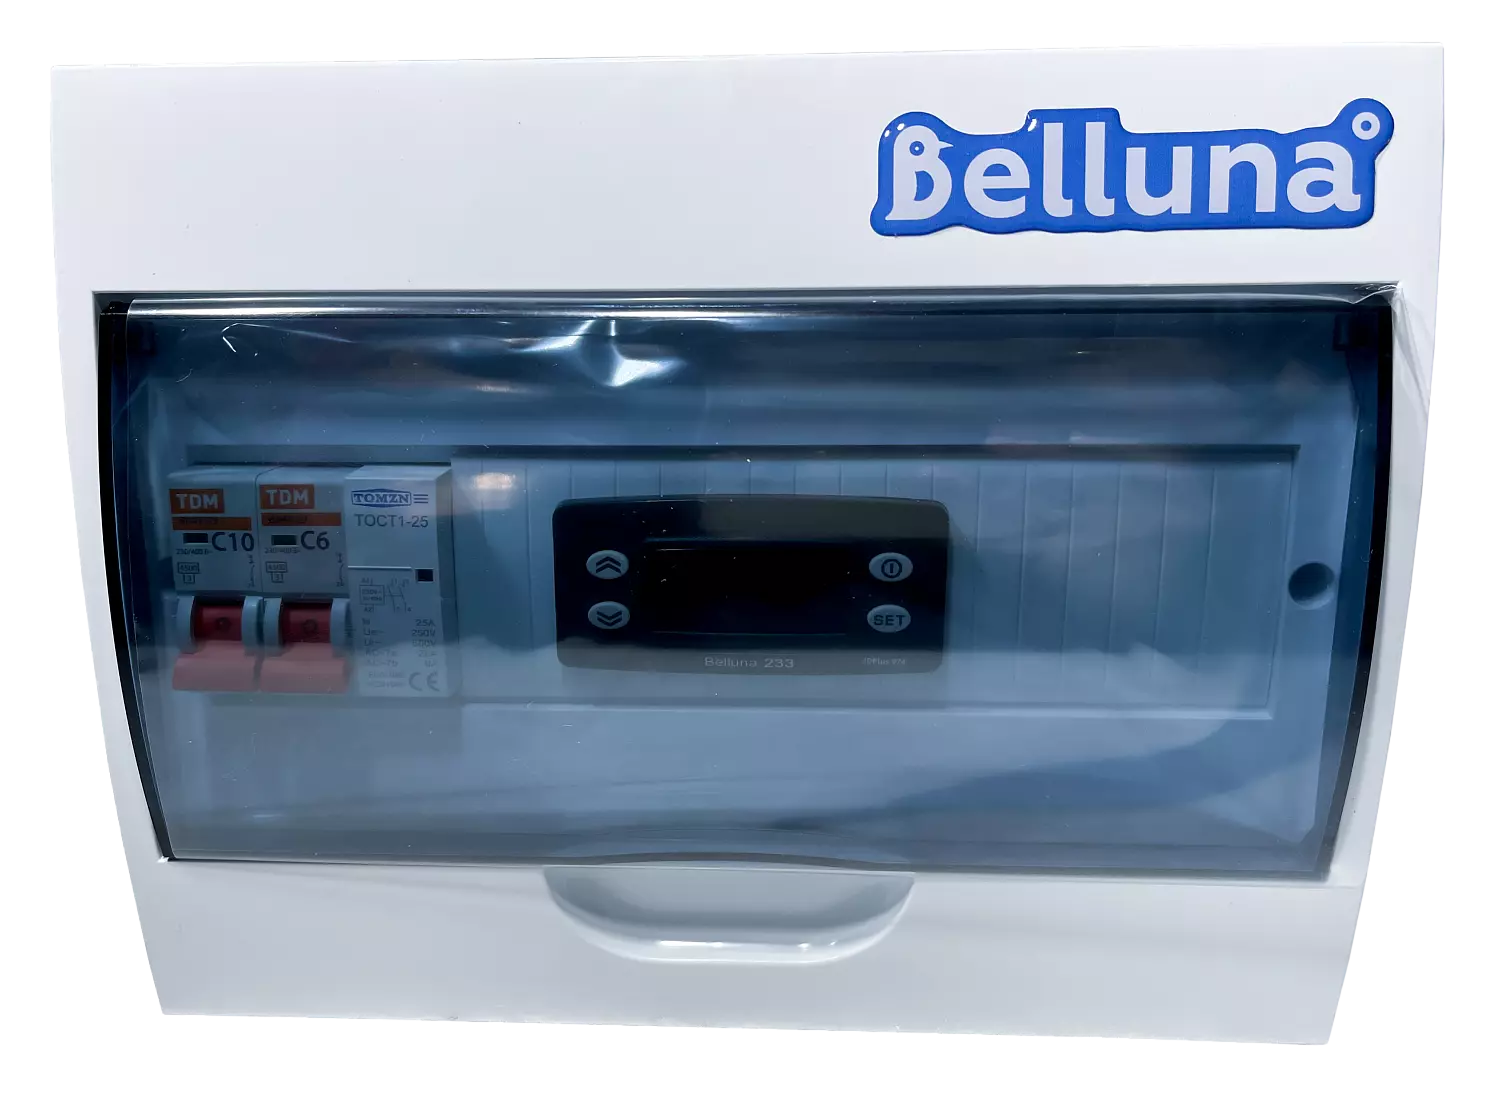 сплит-система Belluna S342 Красноярск